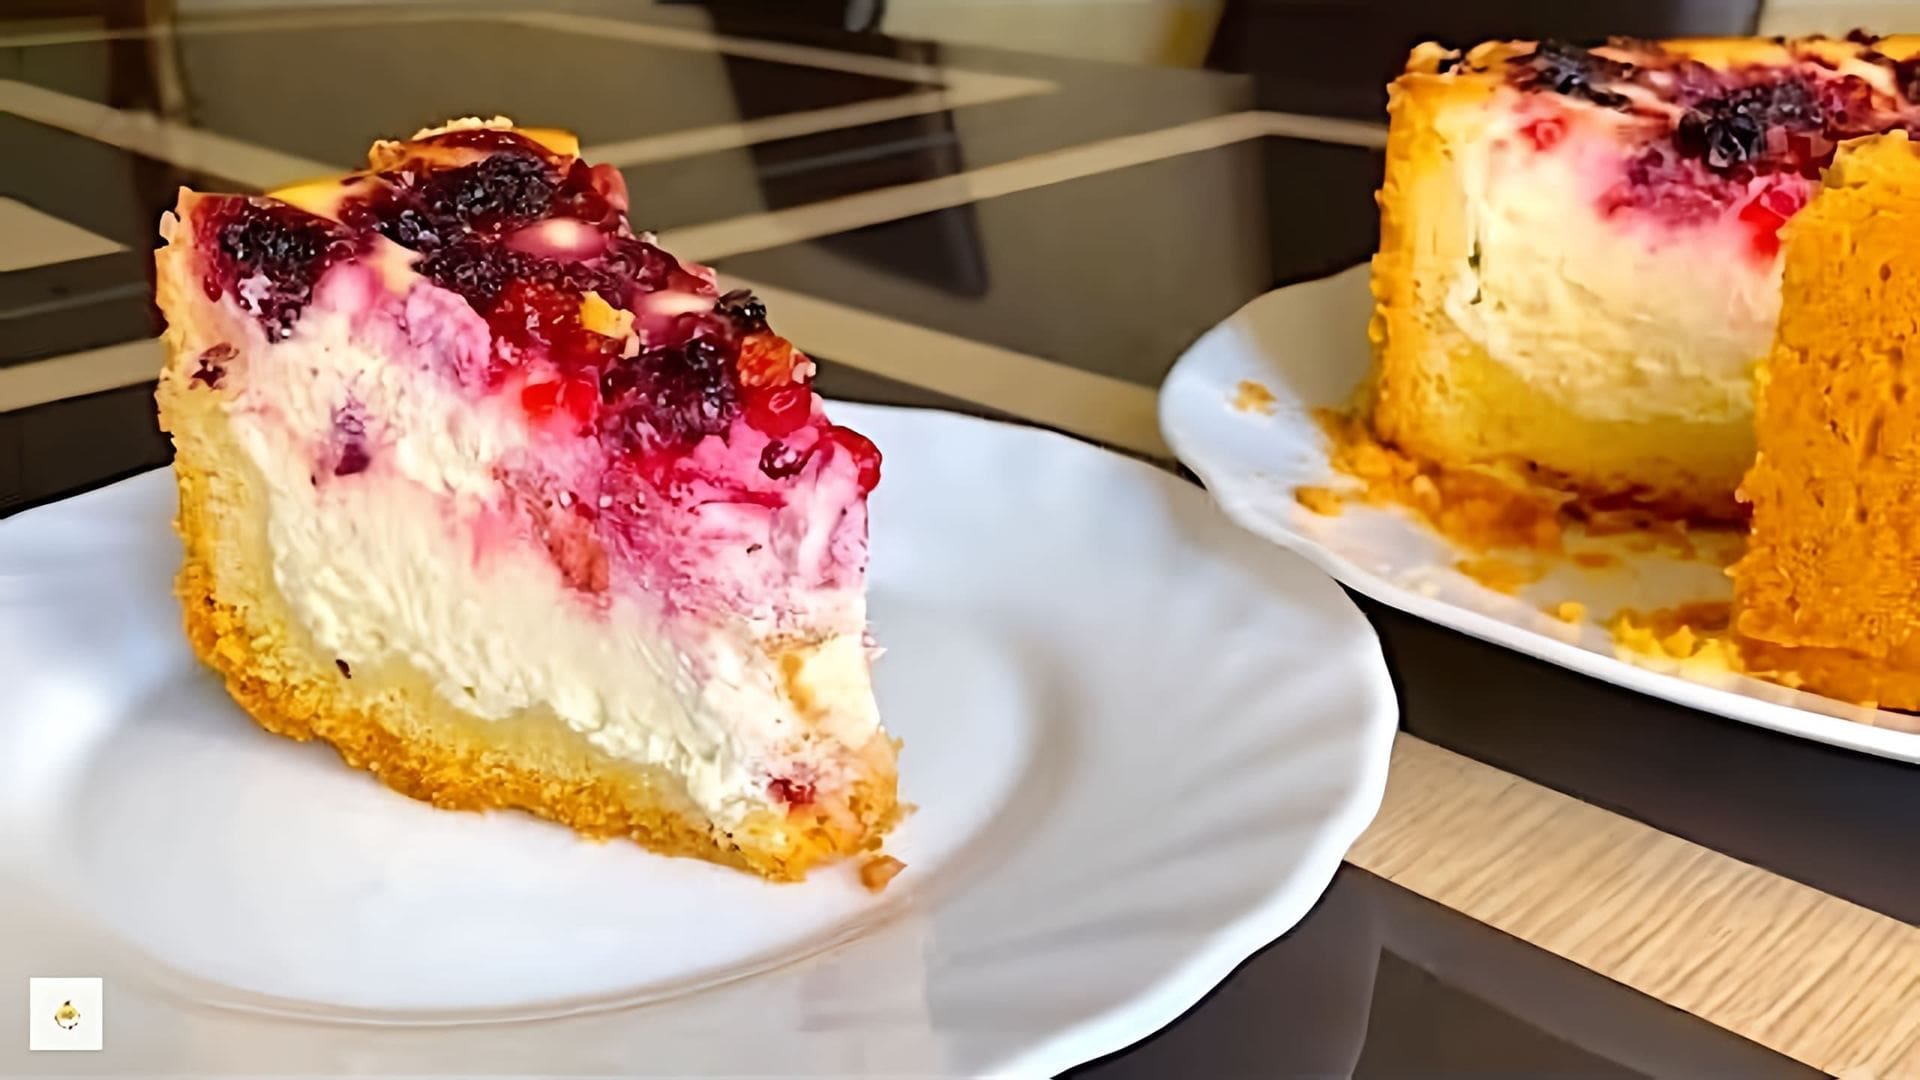 В этом видео демонстрируется процесс приготовления изумительного пирога с творогом и ягодами